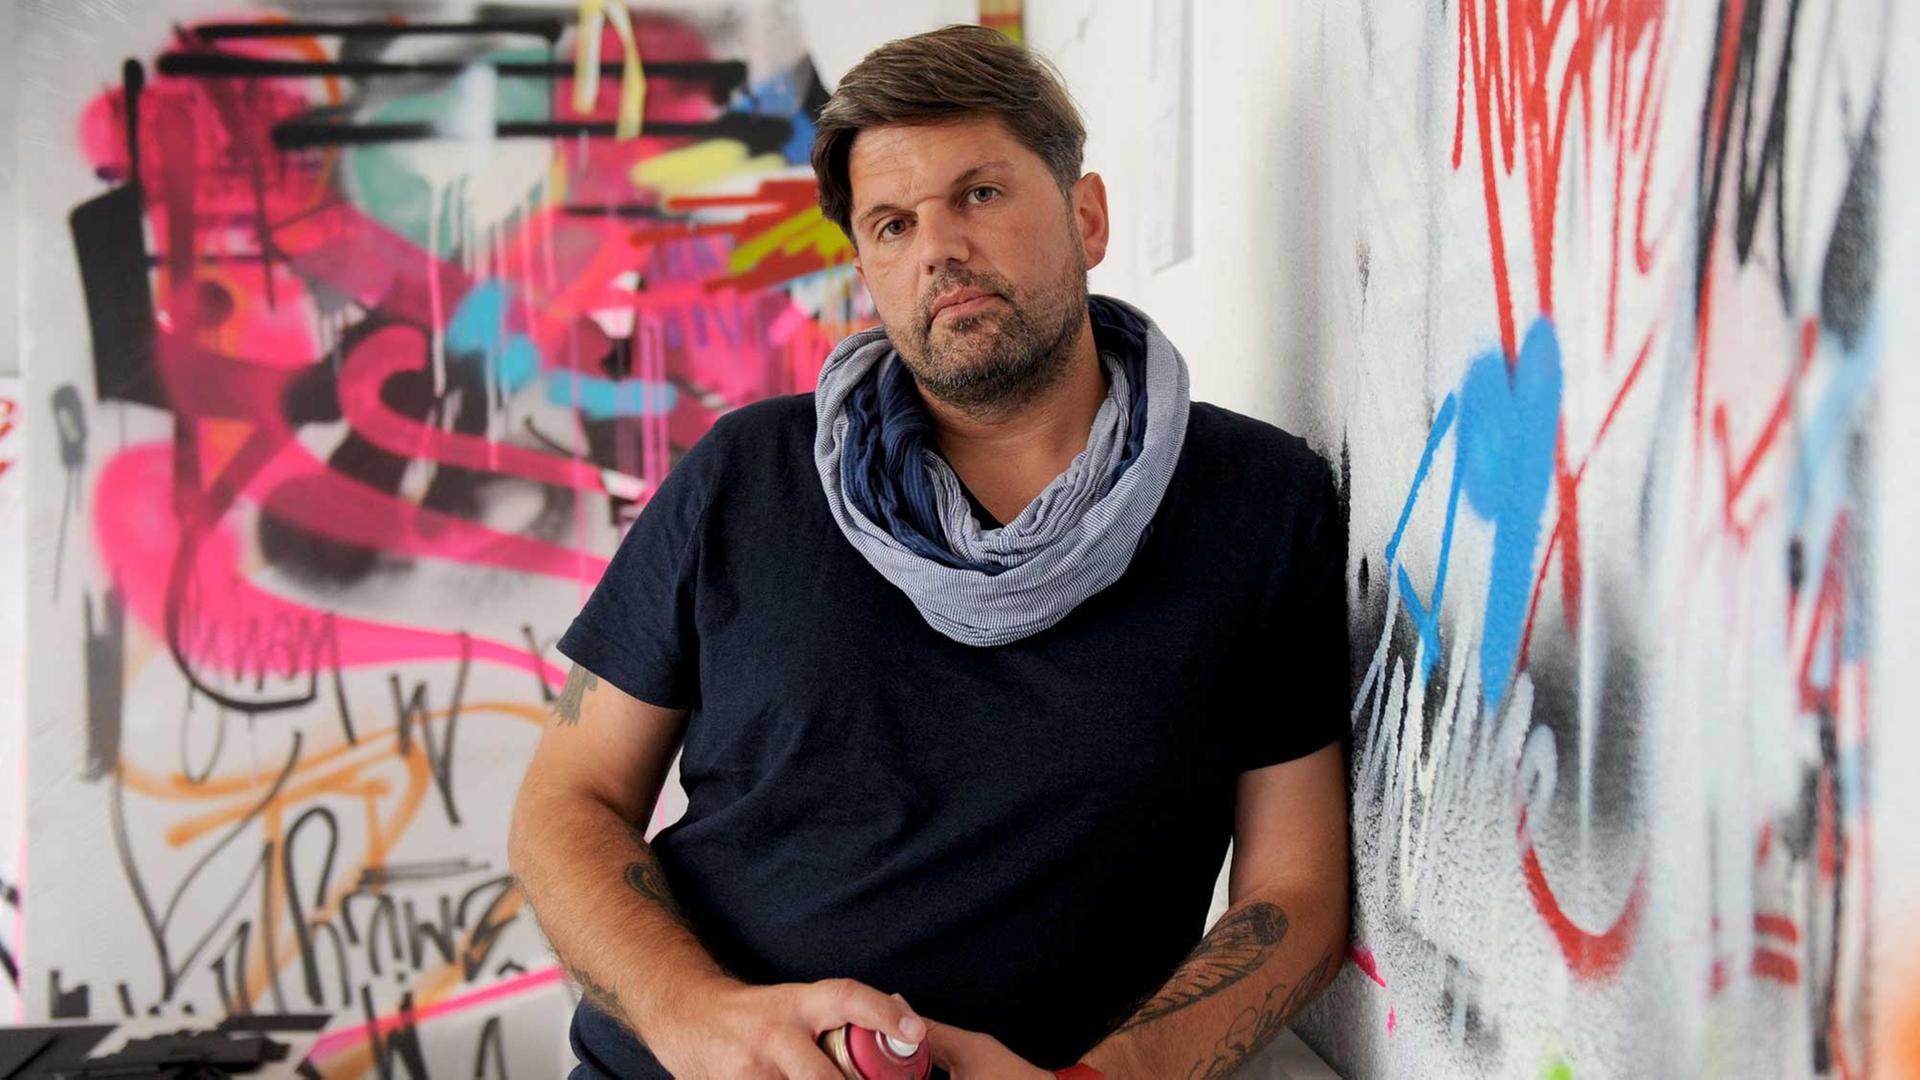 Der Graffiti-Künstler Markus Genesius lehnt am 28.08.2015 mit einer Sprühdose in den Händen an einer Wand seines Ateliers in Bremen. Einige seiner Werke hängen als Entwürfe auf Leinwänden an den Wänden. Genesius gehört zu den etablierten Graffiti-Künstlern, die international im Einsatz sind. Sein Künstlername lautet wow123.